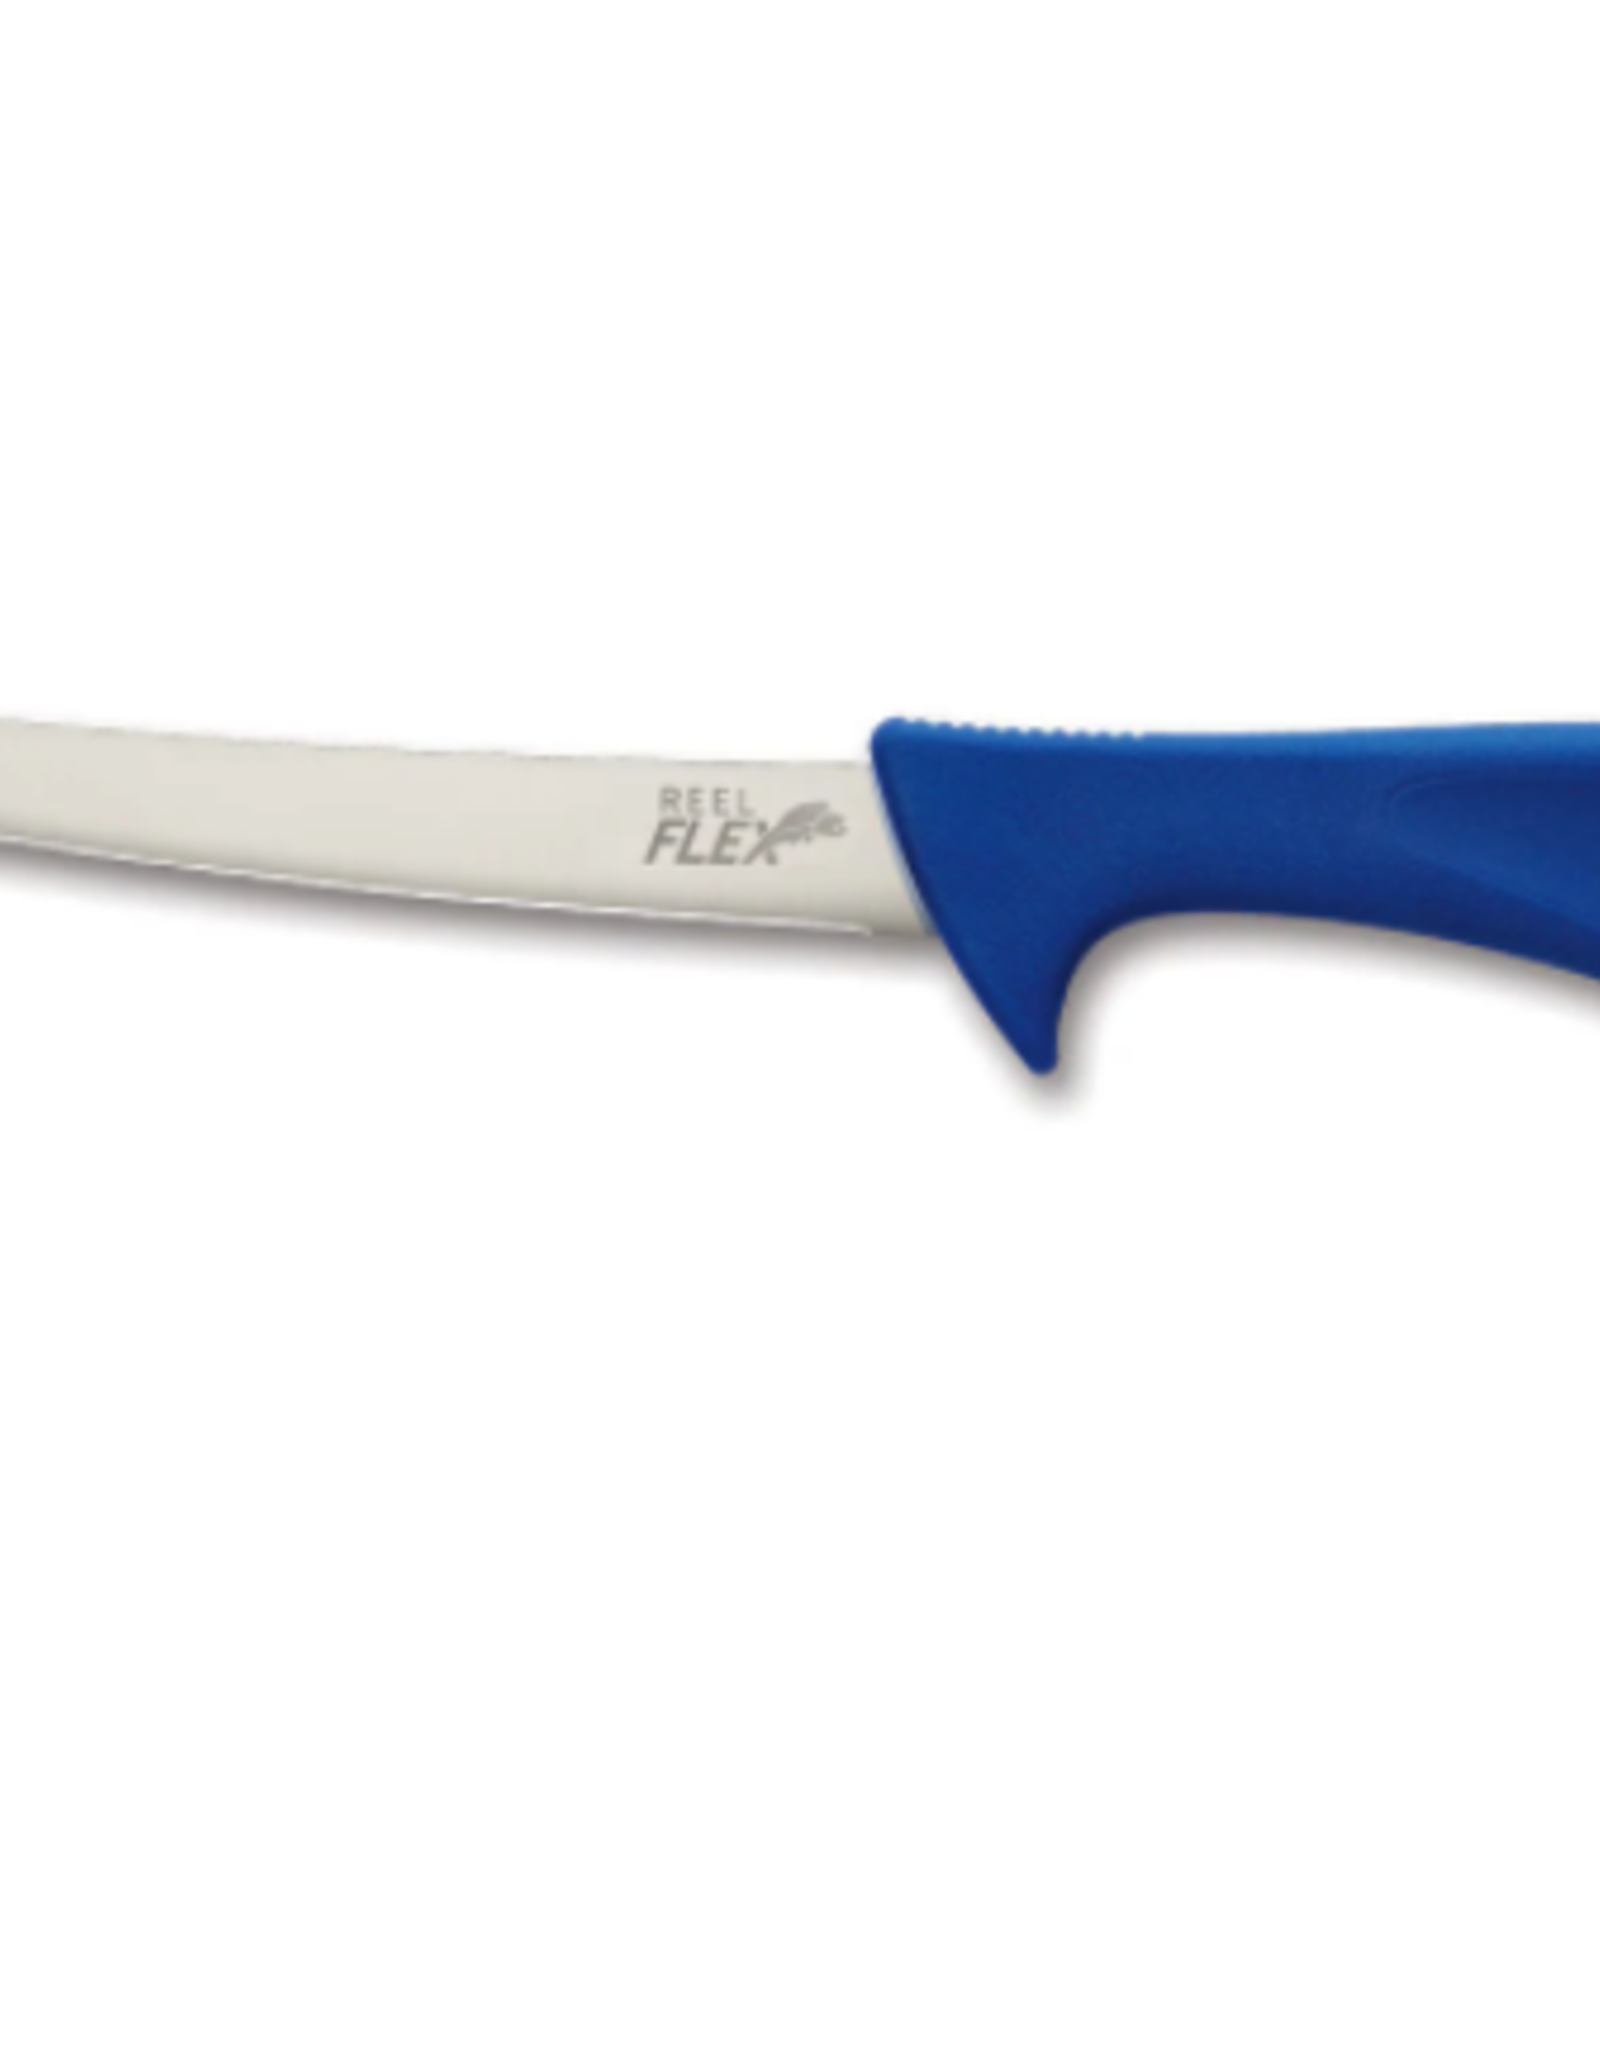 Outdoor Edge Outdoor Edge Reel Flex 7.5" Fillet Knife